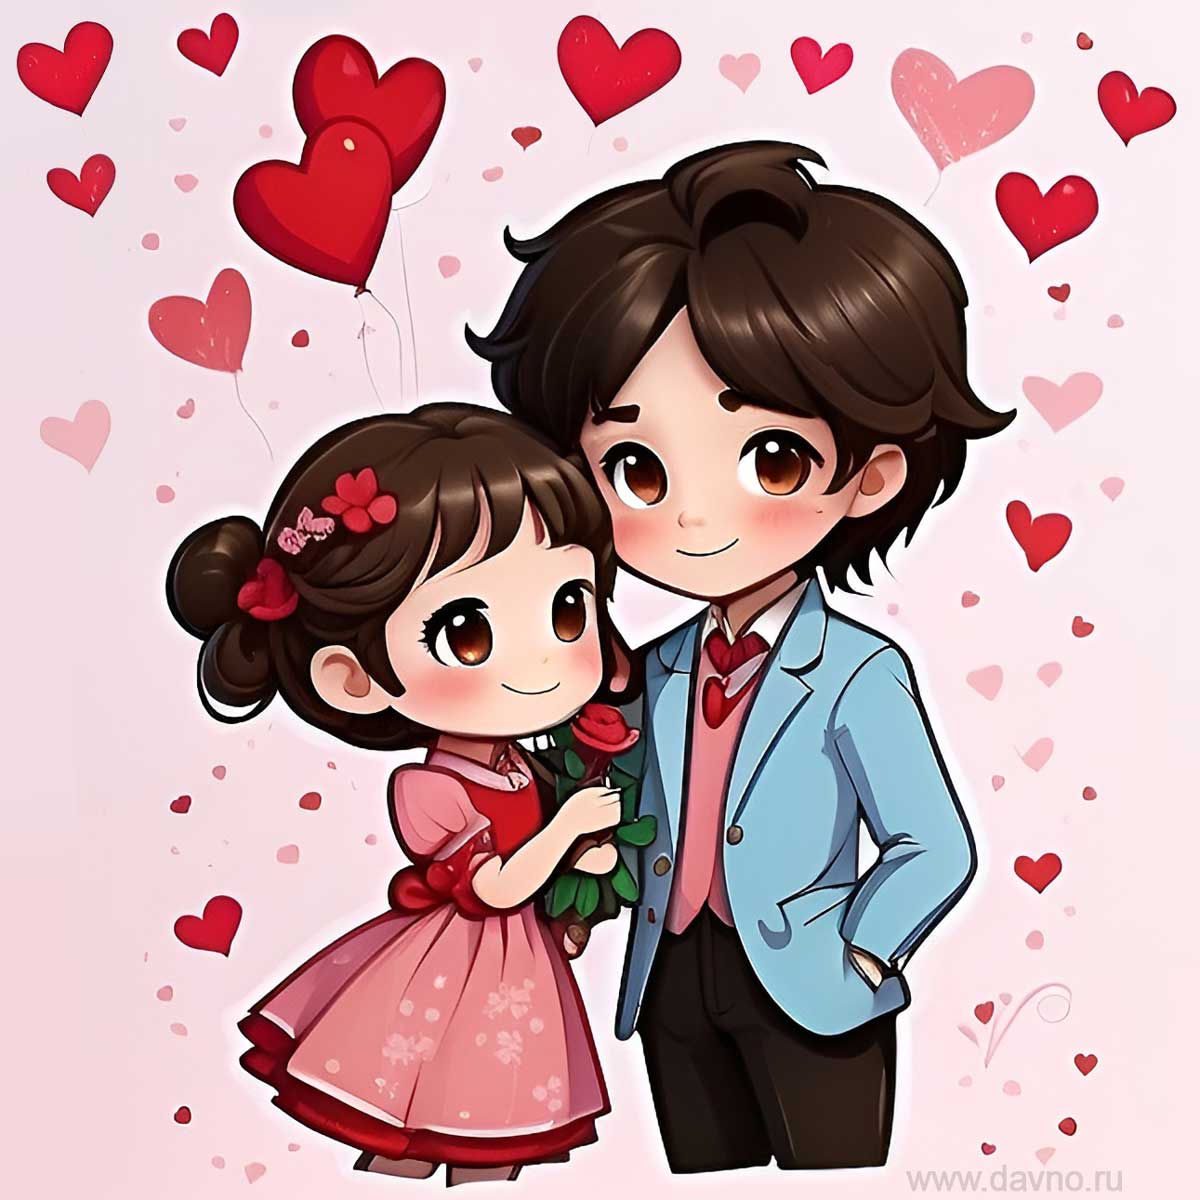 Романтическая картинка с влюблённой парой, нарисованная в стиле аниме